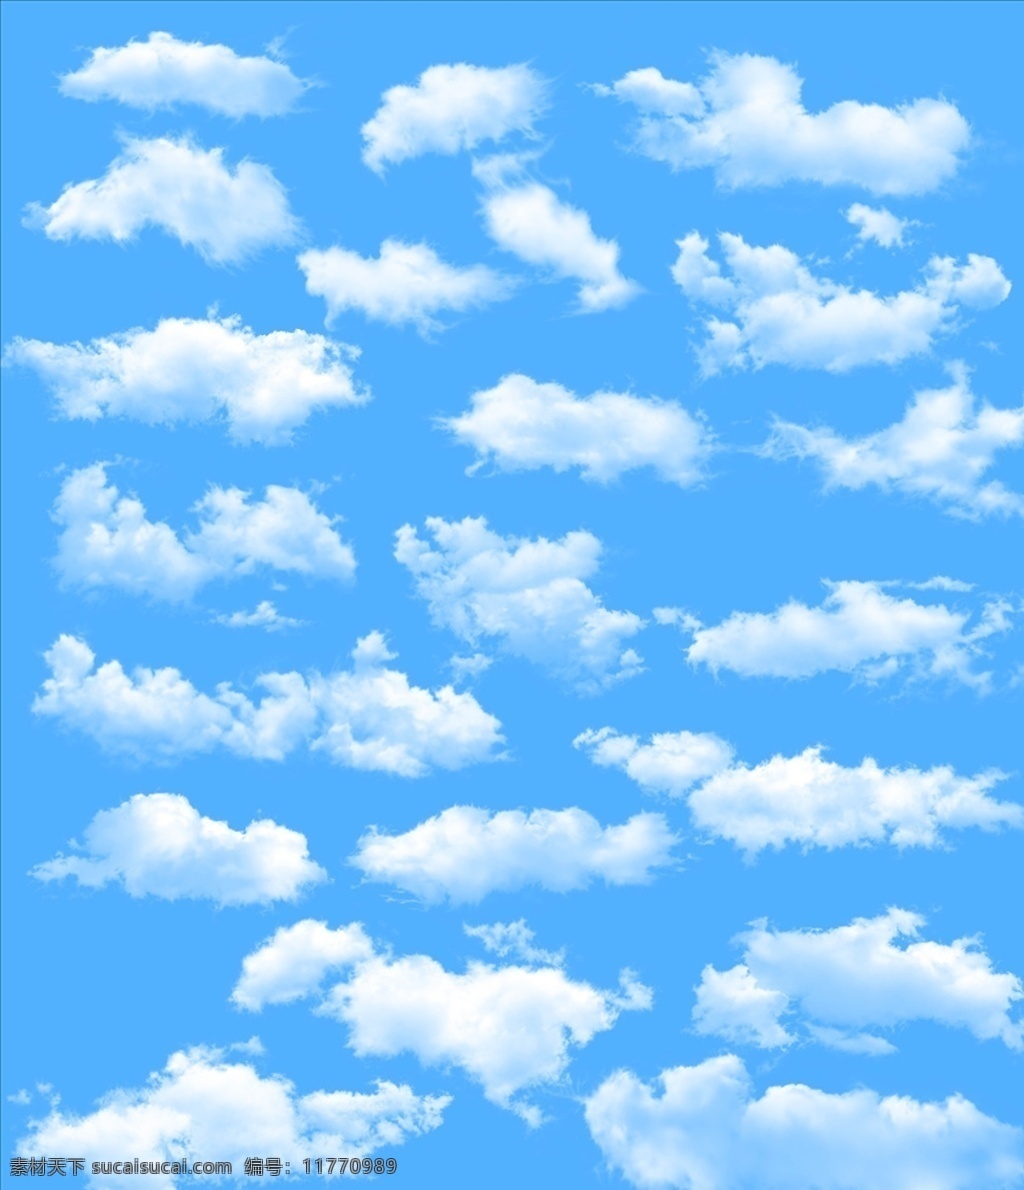 蓝天 蓝天素材 蓝天背景 白云素材 白云背景 蓝天白云 蓝天白云素材 蓝天白云背景 云朵 云朵素材 云彩 彩云 彩云素材 云 各类素材 分层